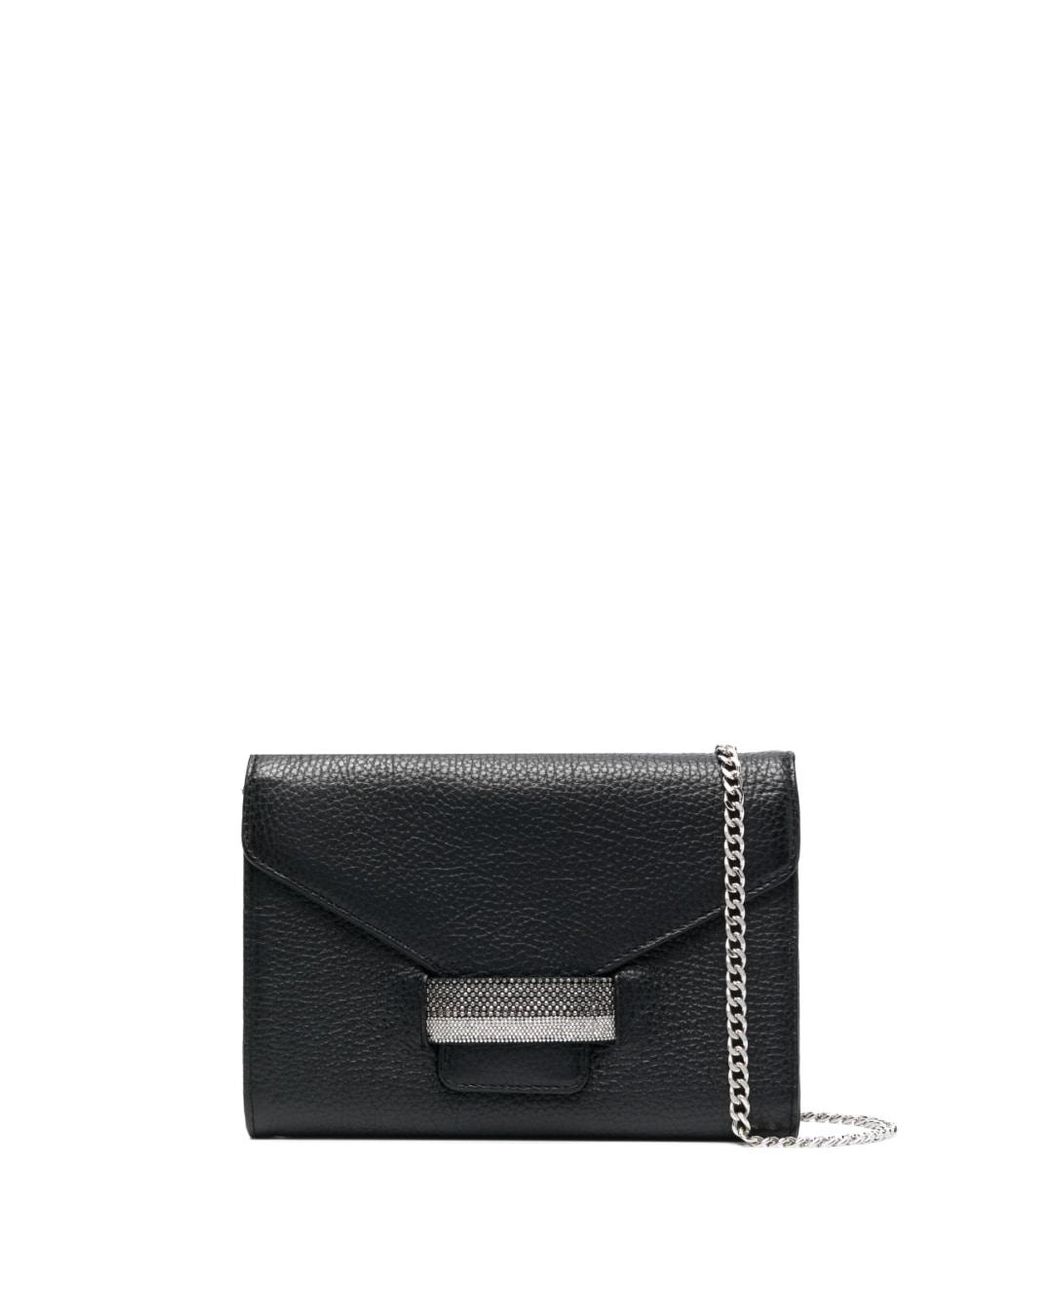 Fabiana Filippi Crystal-embellished Clutch Bag in Black | Lyst